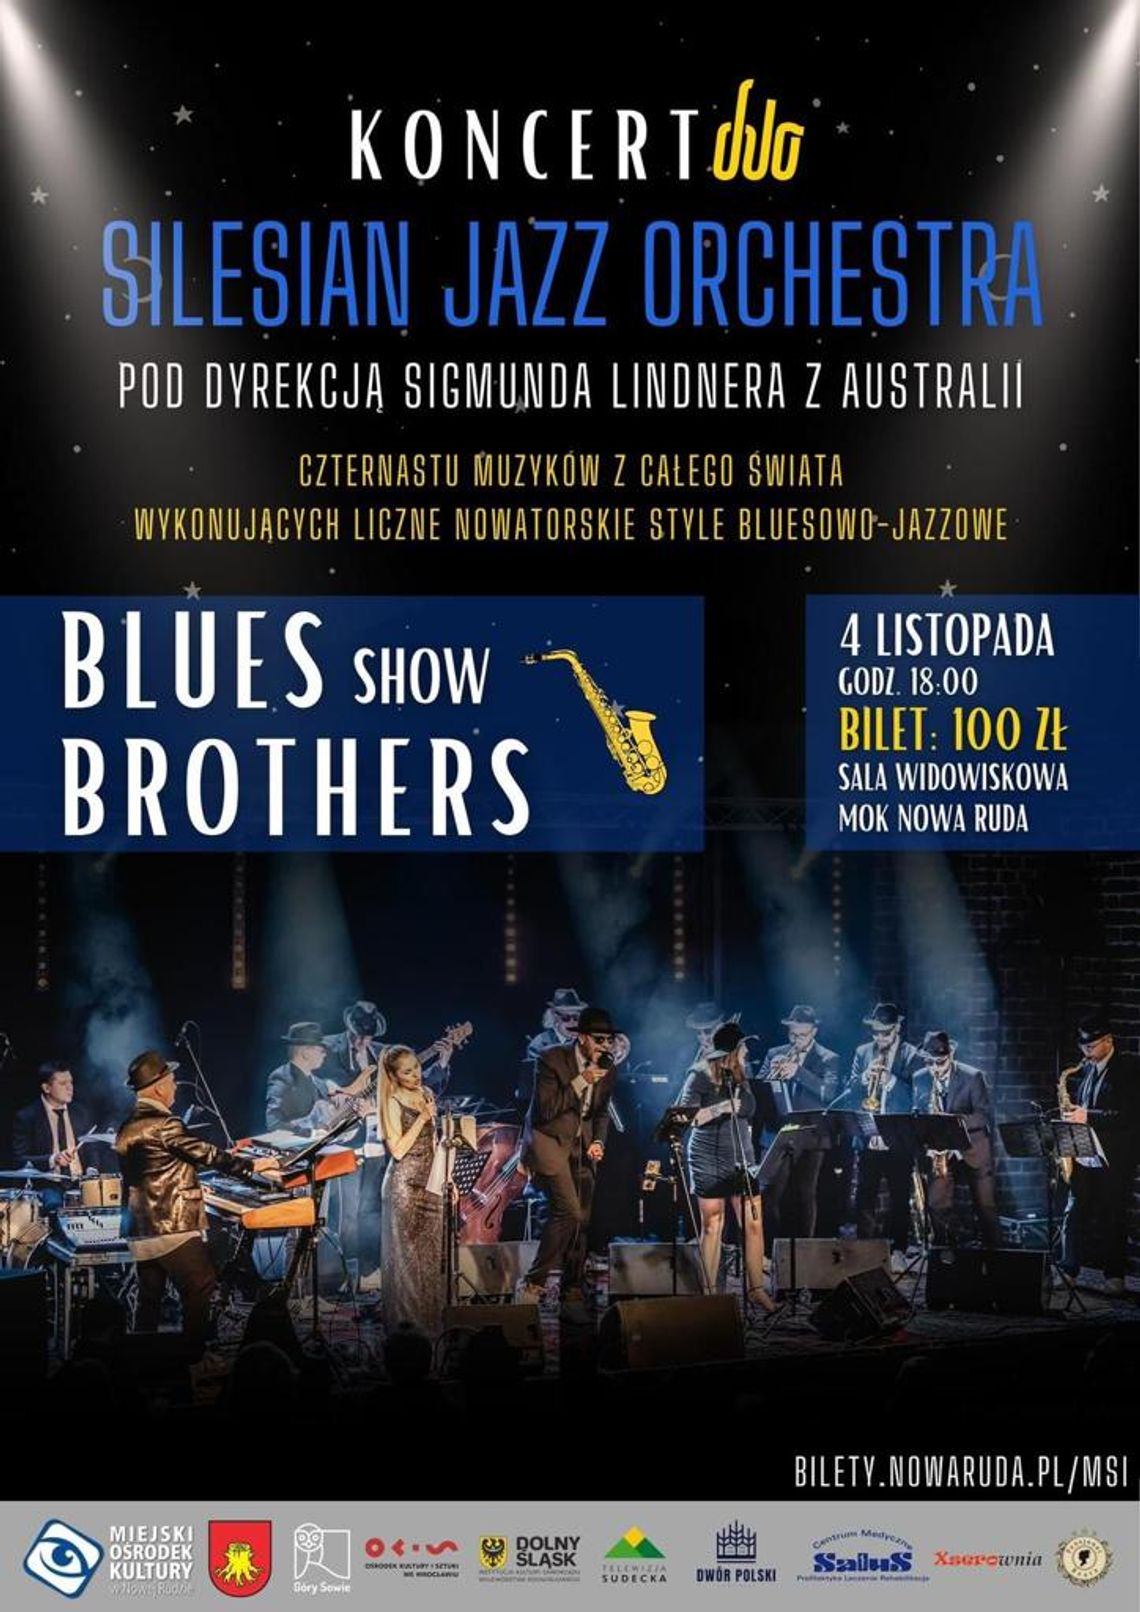 Koncert  Silesian Jazz Orchestra "Blues Brothers Show"w Nowej Rudzie